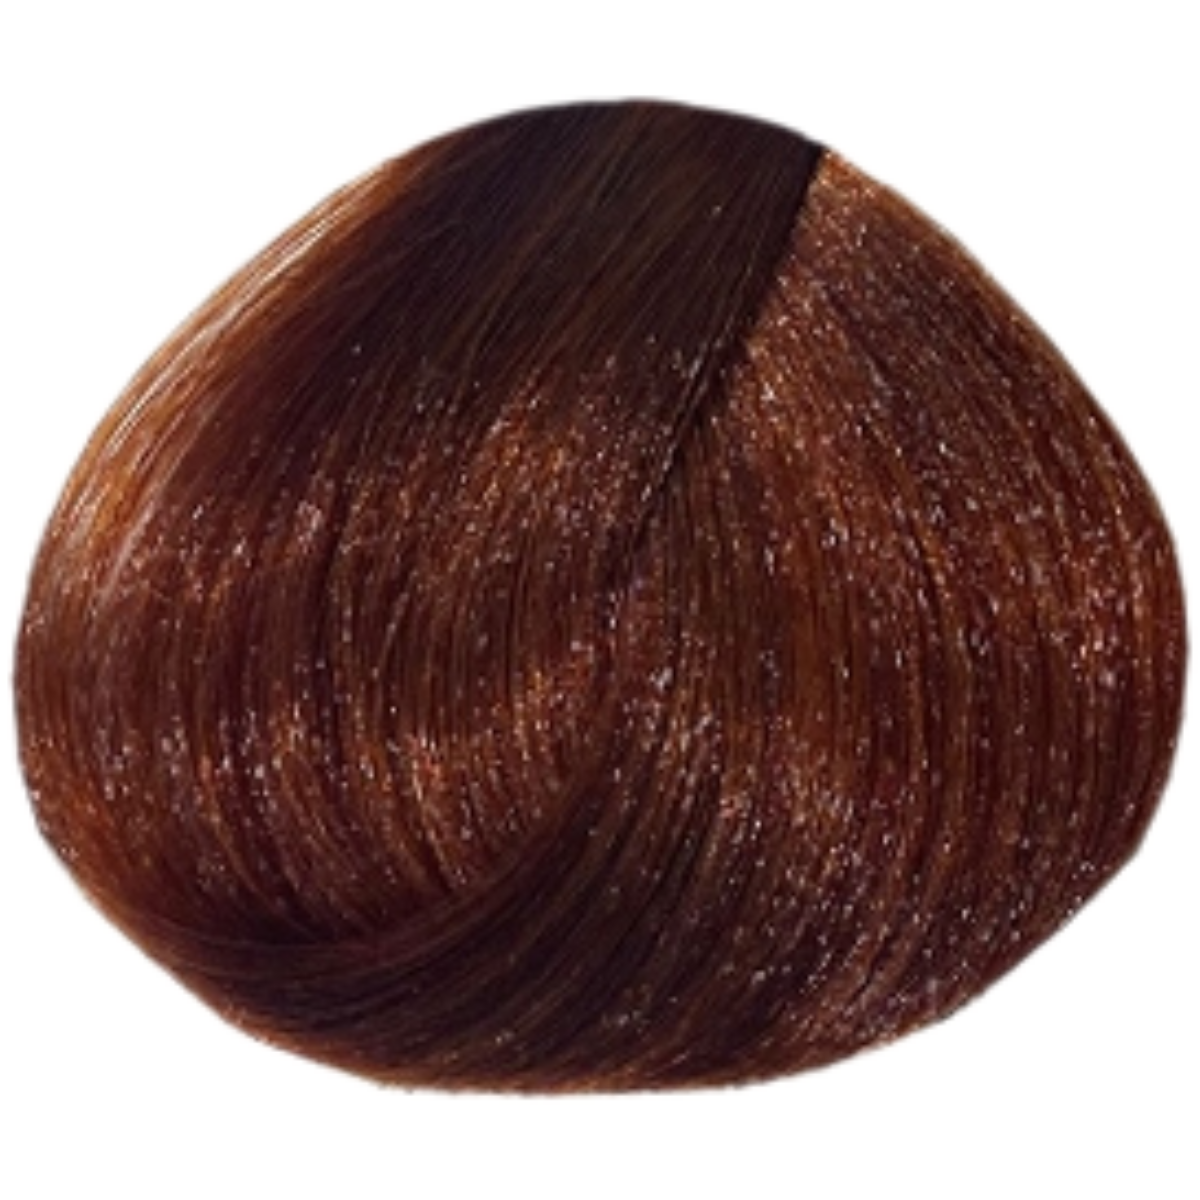 צבע שיער 6.43 DARK COPPER GOLDEN BLONDE פארמויטה FarmaVita צבע לשיער 100 גרם